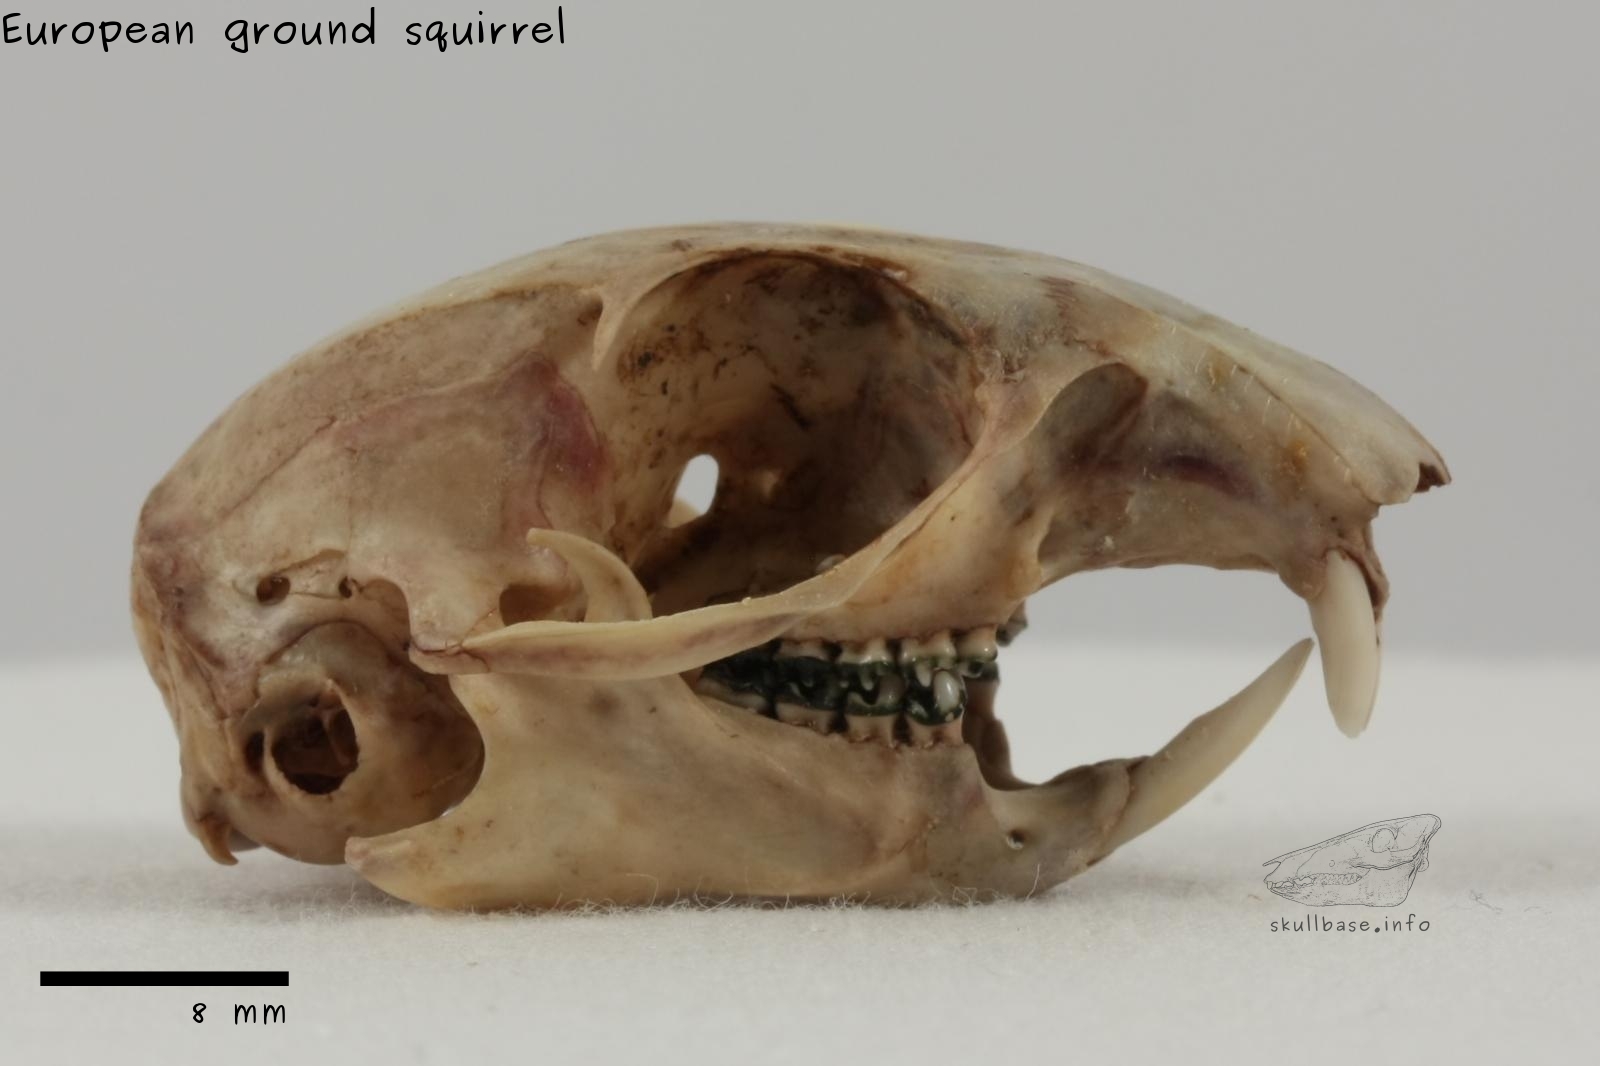 European ground squirrel (Spermophilus citellus) skull lateral view